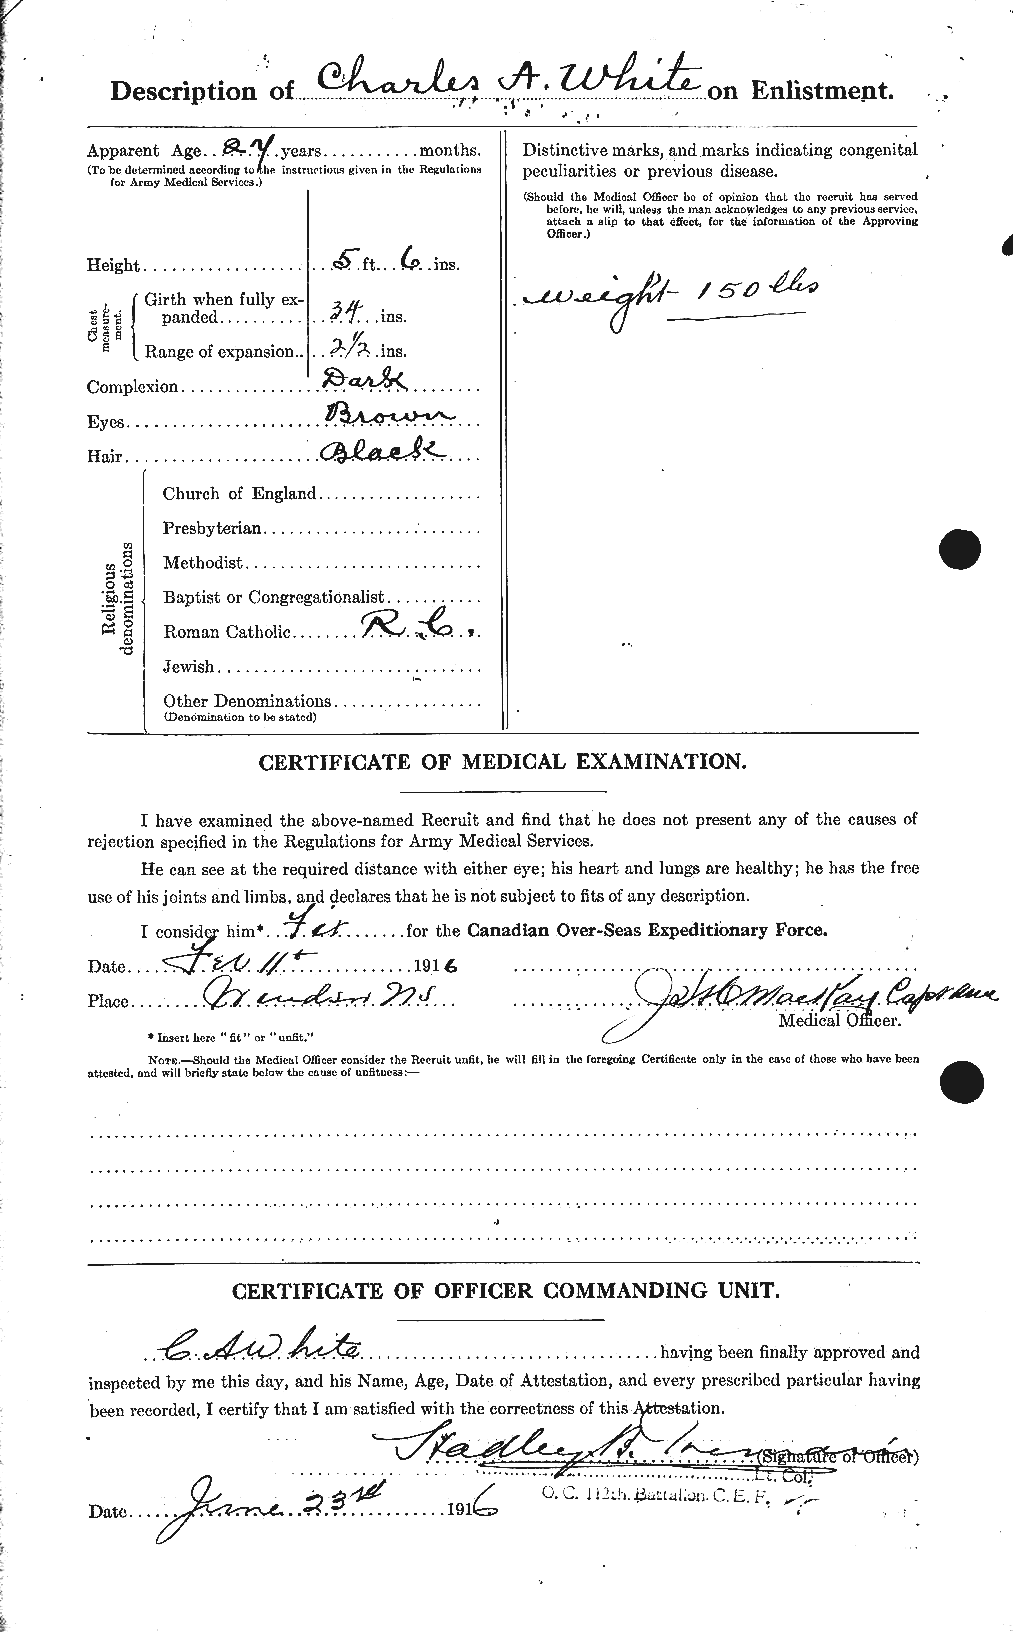 Dossiers du Personnel de la Première Guerre mondiale - CEC 669919b